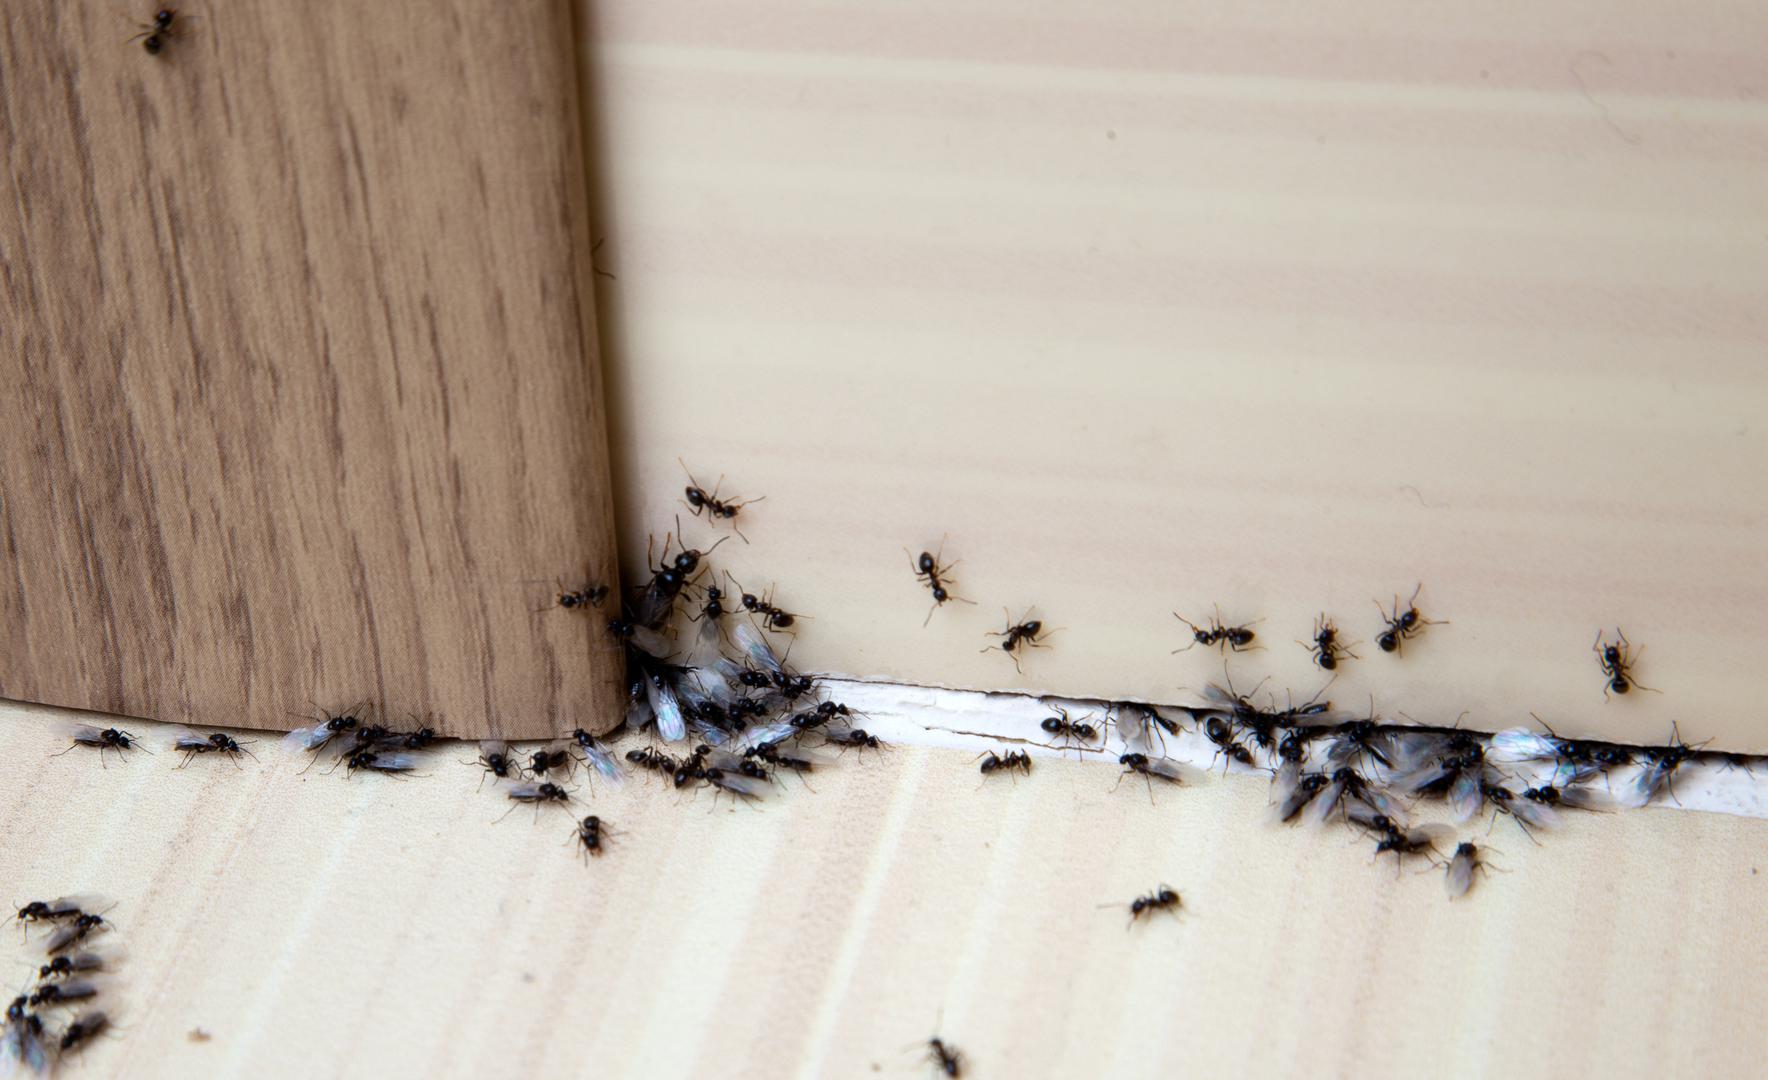 Ako vam je dosta mrava koji hodaju po vašem domu, ne brinite – imamo rješenje za vas. Dok mnogi od nas uživaju u toplijem vremenu, povećanje temperature također znači da će mravi biti aktivniji. Mravi mogu prouzročiti mnogo problema u nekretninama, ulazeći u ormare, hranu pa čak i u hladnjake i zamrzivače. No, profesionalno uklanjanje mrava može stajati i do 270 eura po tretmanu, piše The Sun.  